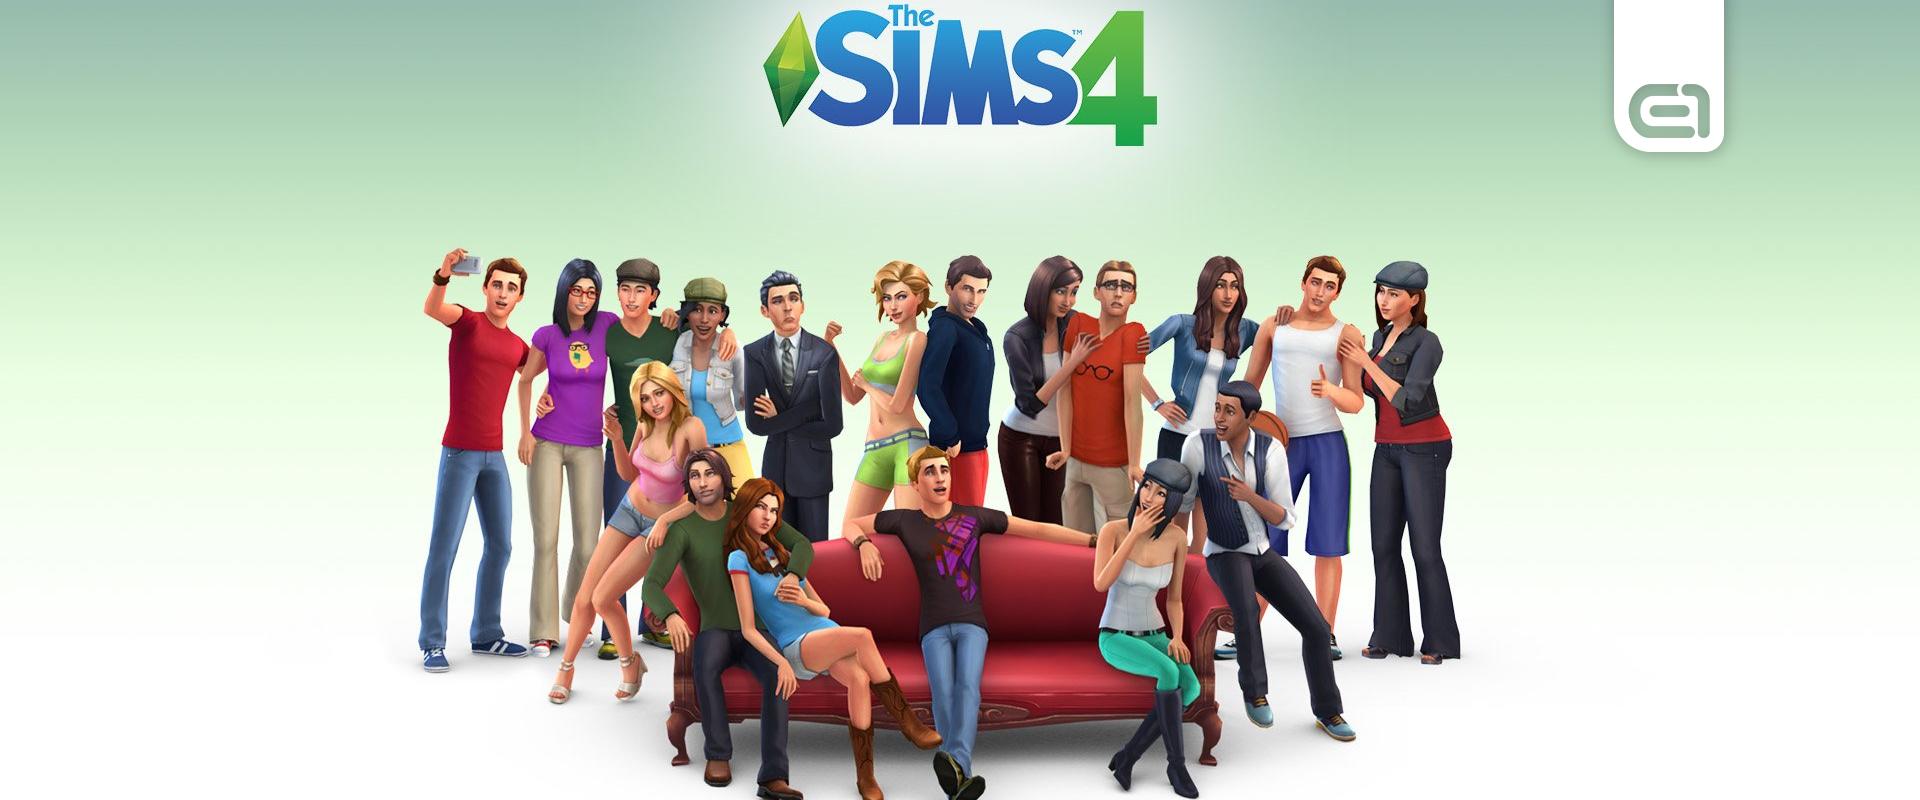 Így húzhatod be ingyen a The Sims 4-et számos kiegészítőjével együtt